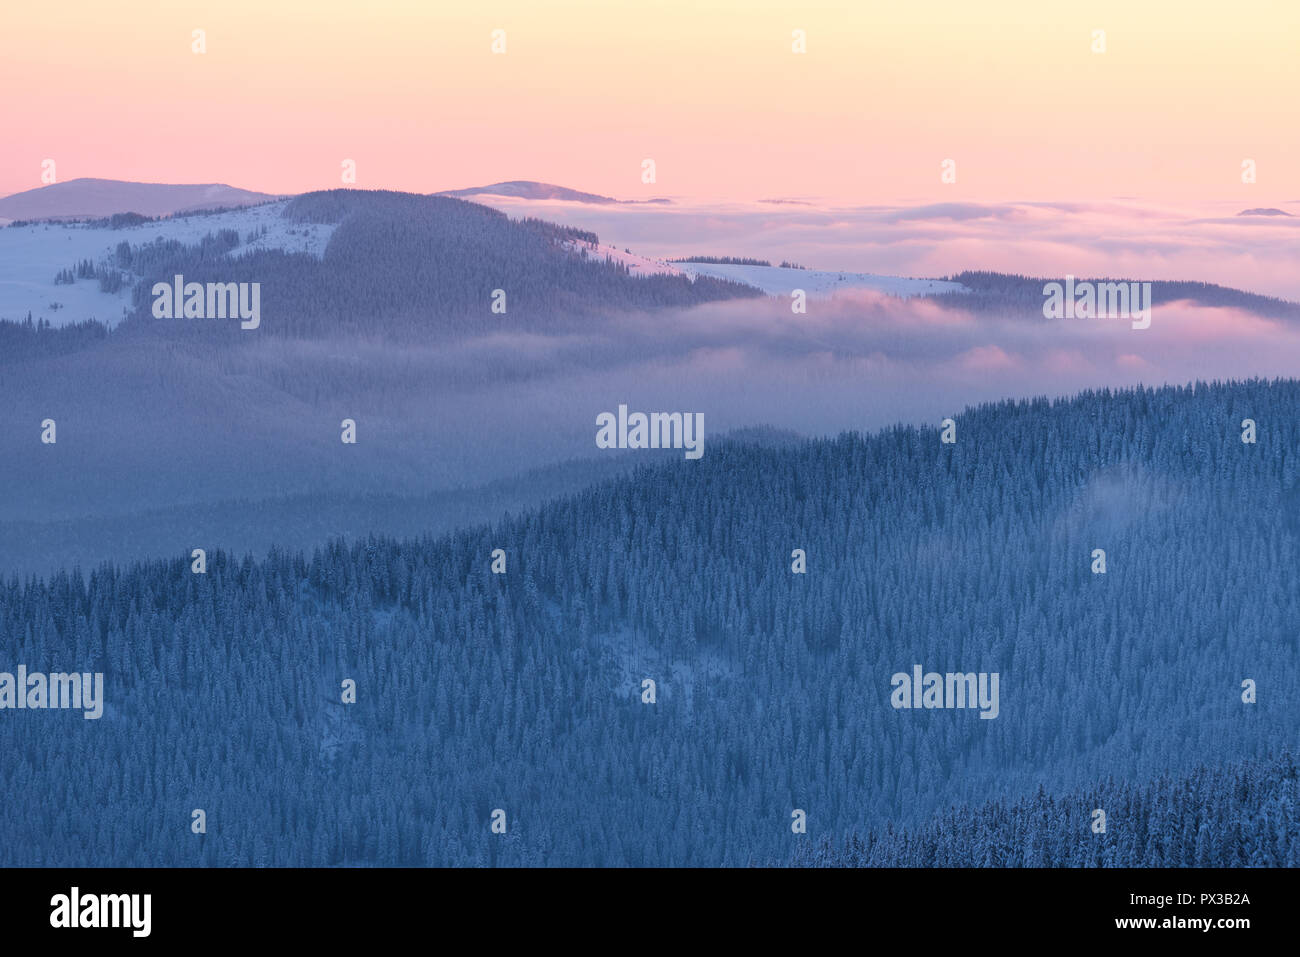 Alba in montagna. Paesaggio invernale con boschi innevati su pendii. Dolce luce mattutina Foto Stock